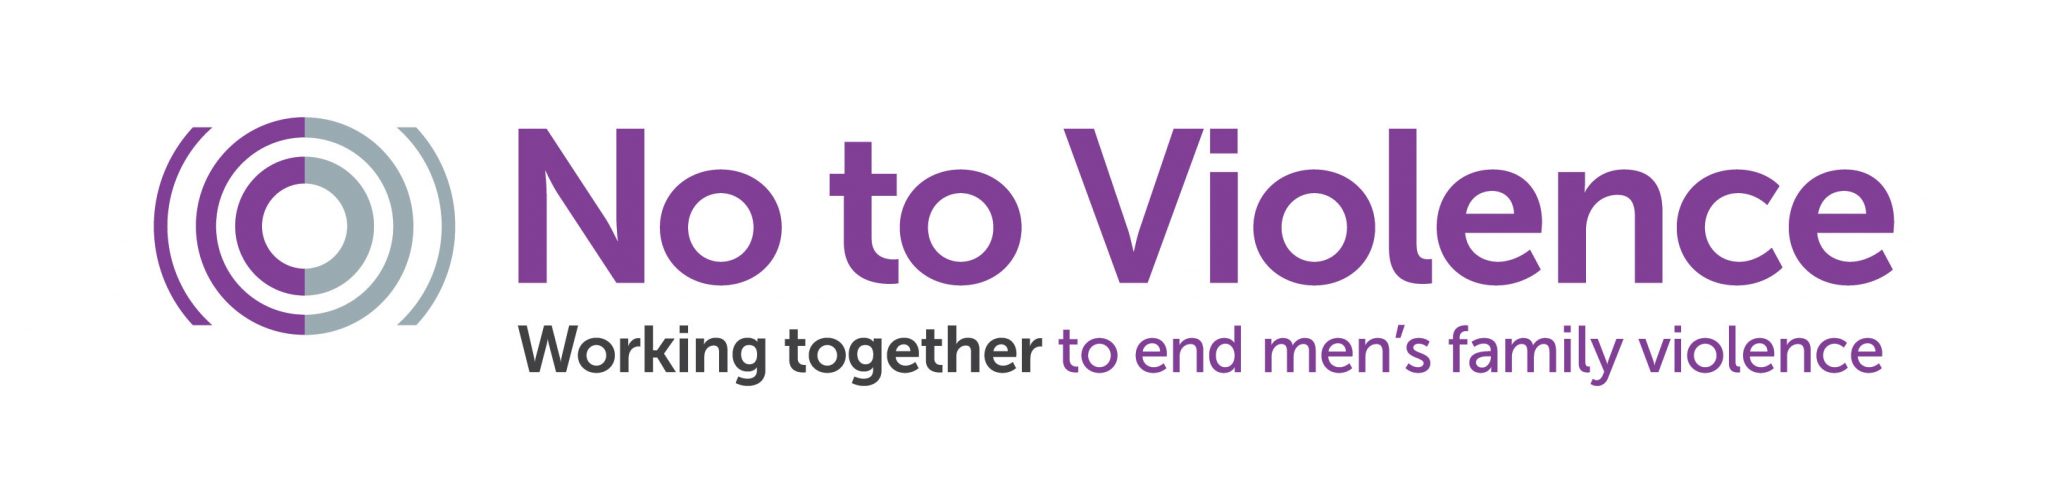 no-to-violence-logo-2048x503